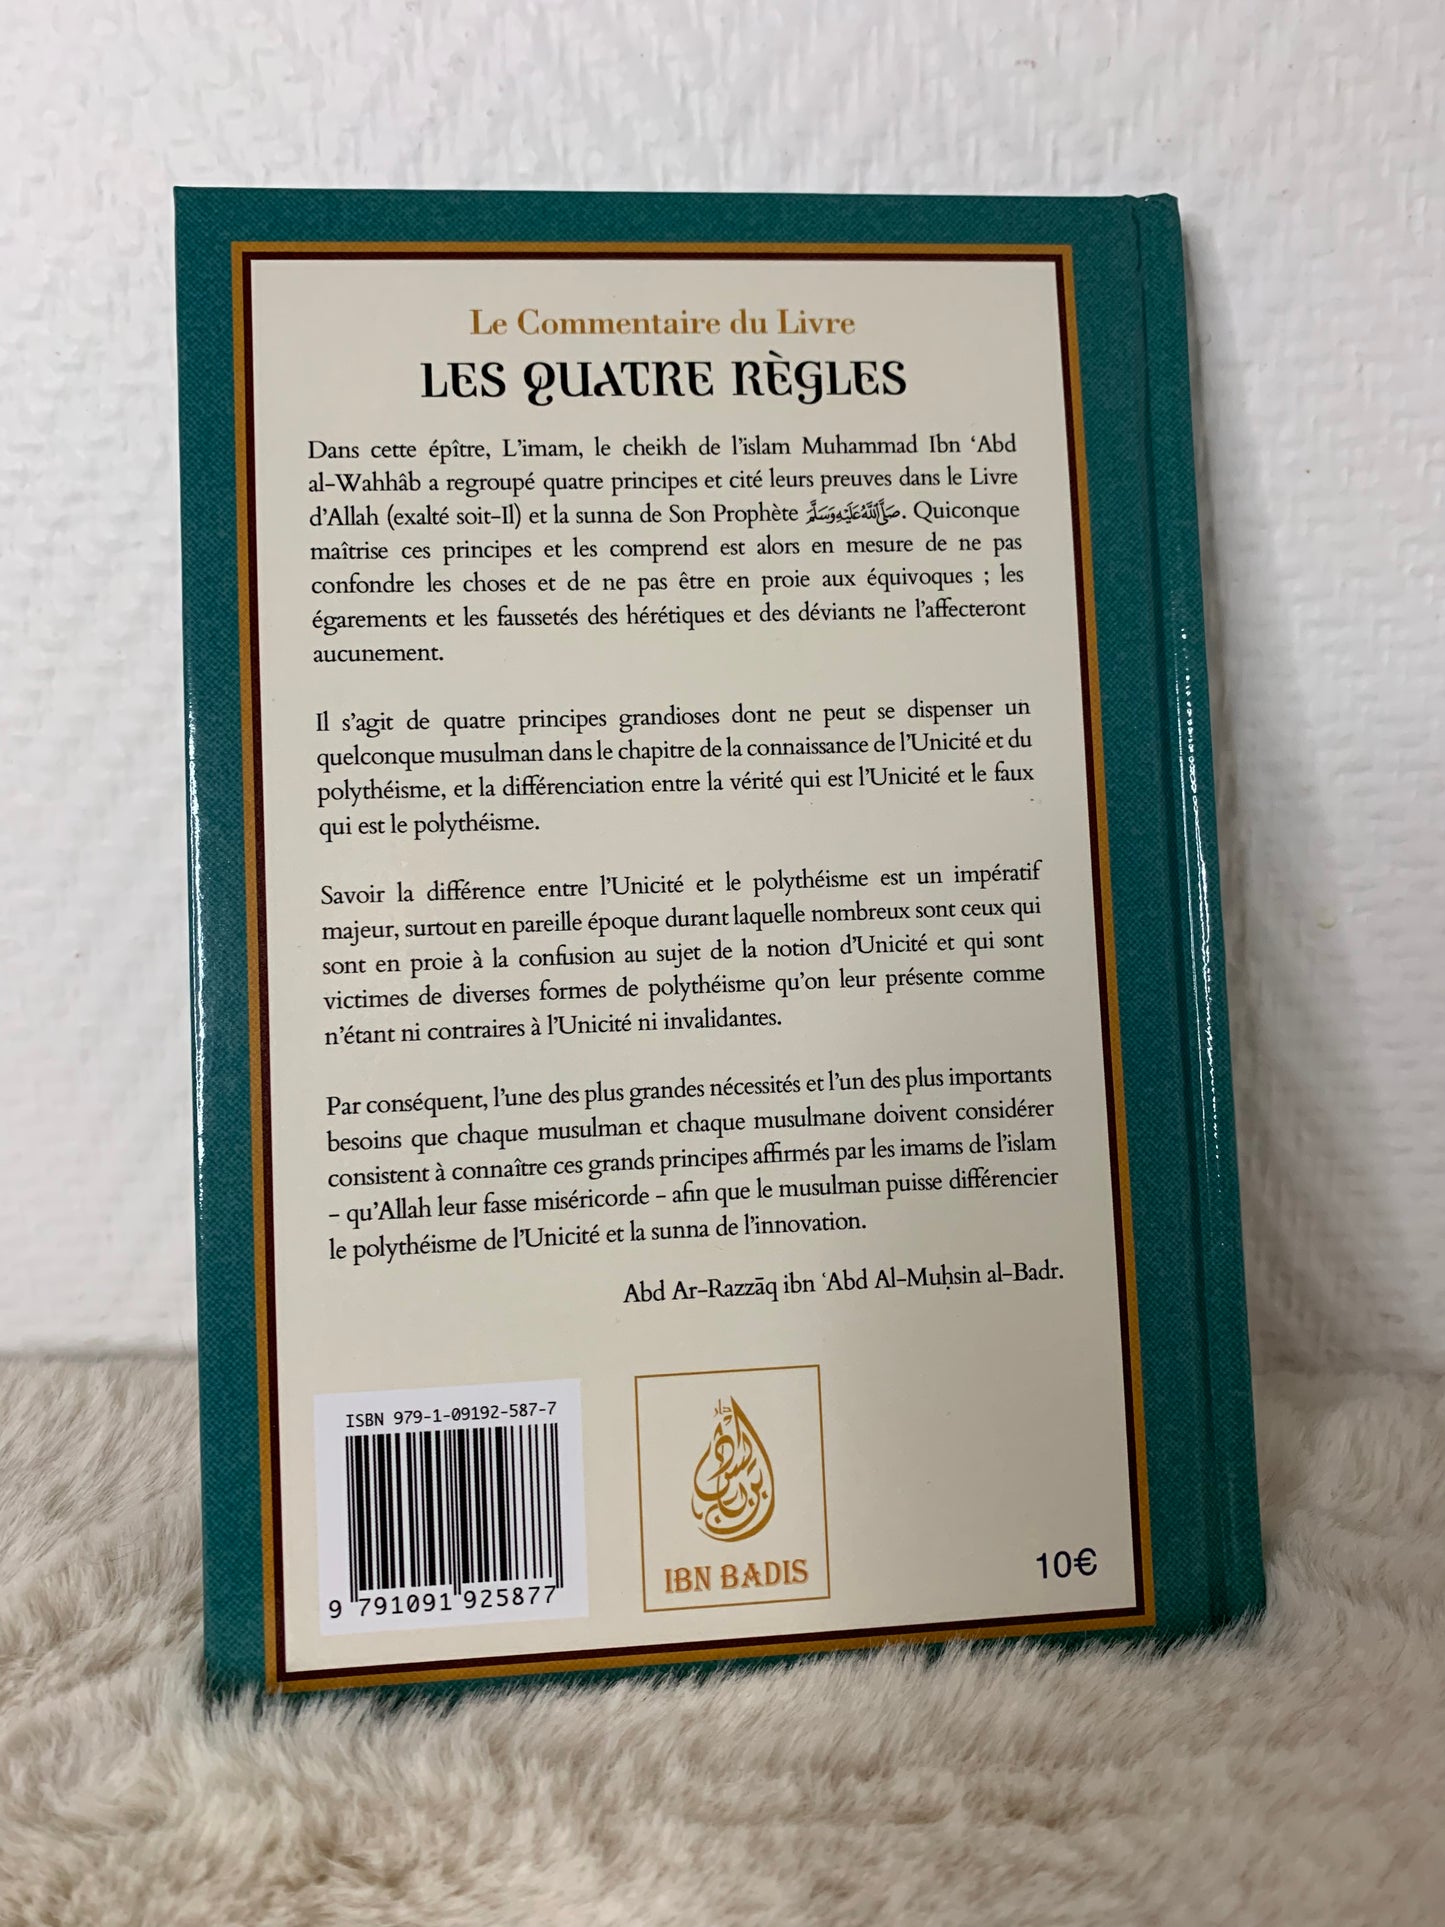 Le commentaire du Livre Les Quatre règles, de Cheik et Imam Mohammed Ibn 'Abd Al-Wahab, par Abd Ar-Razzâq Abd Al-Muhsin al-Badr